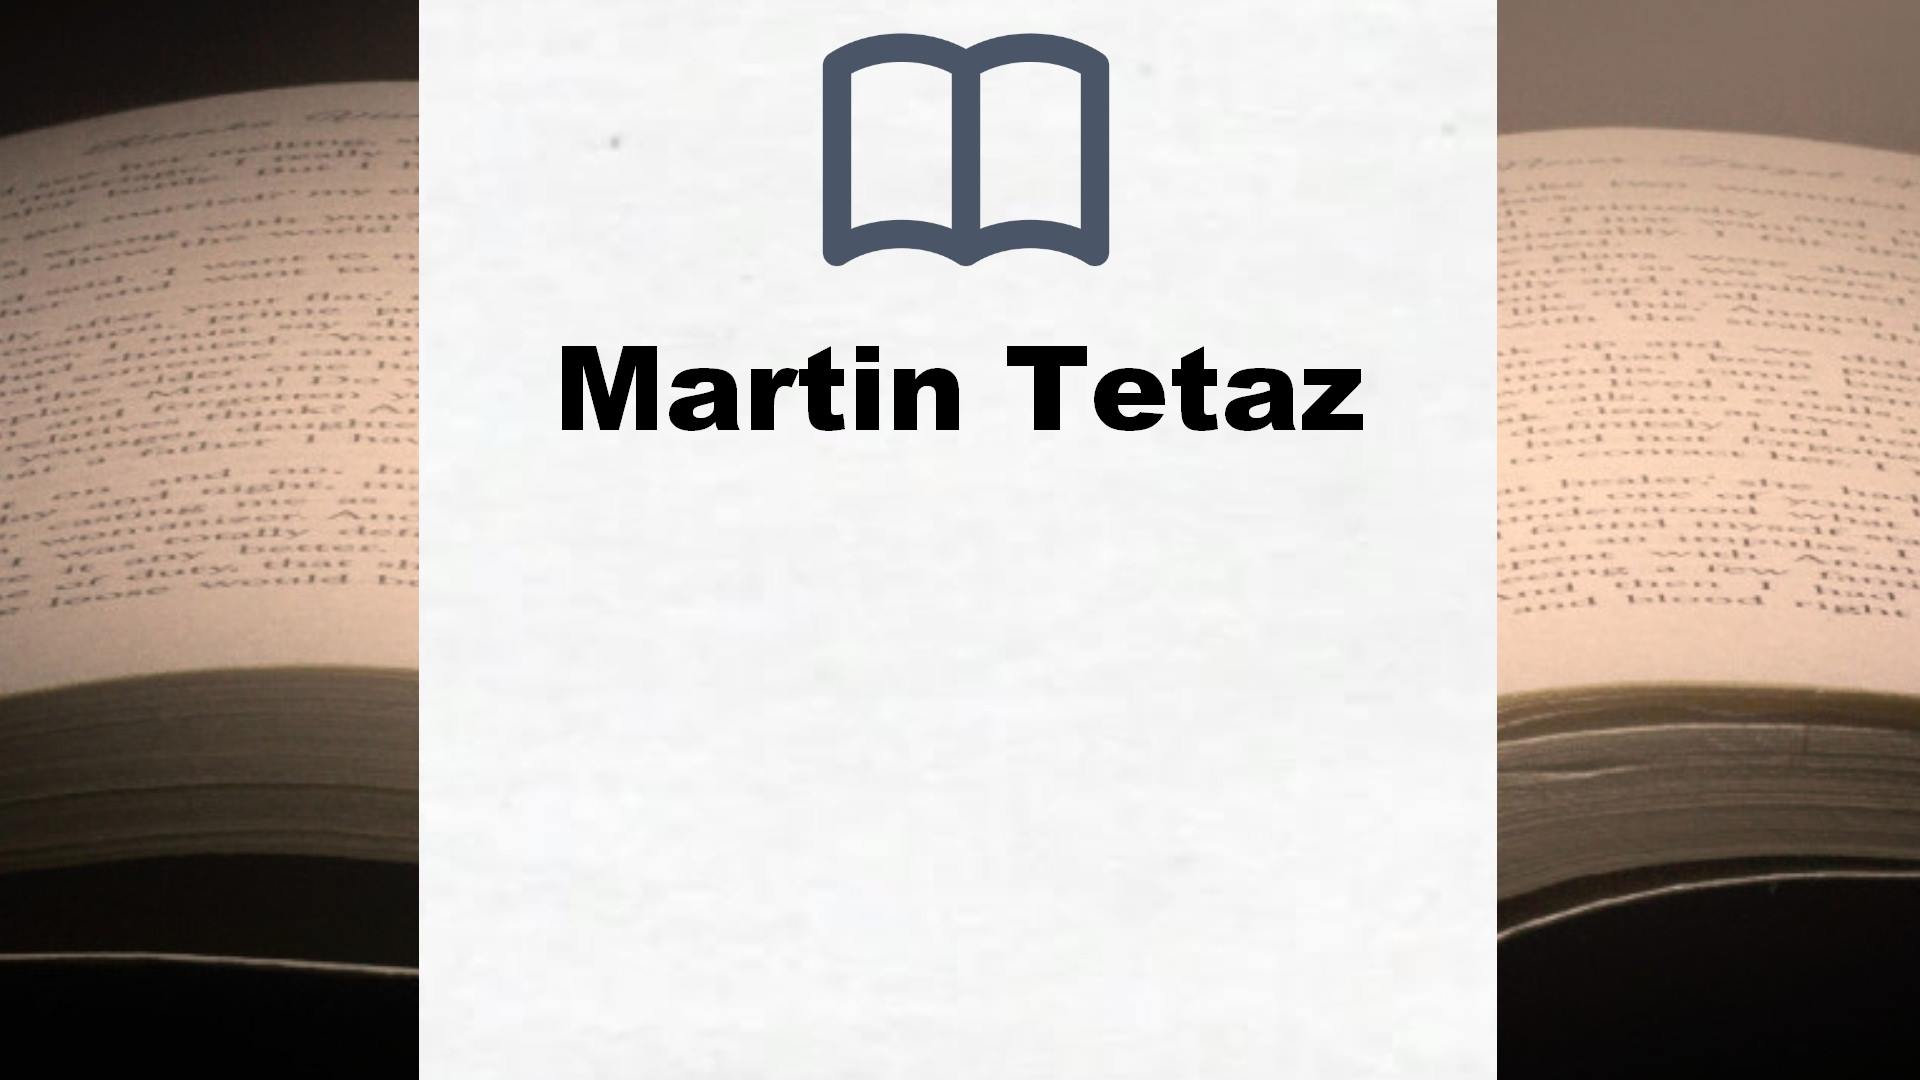 Libros Martin Tetaz